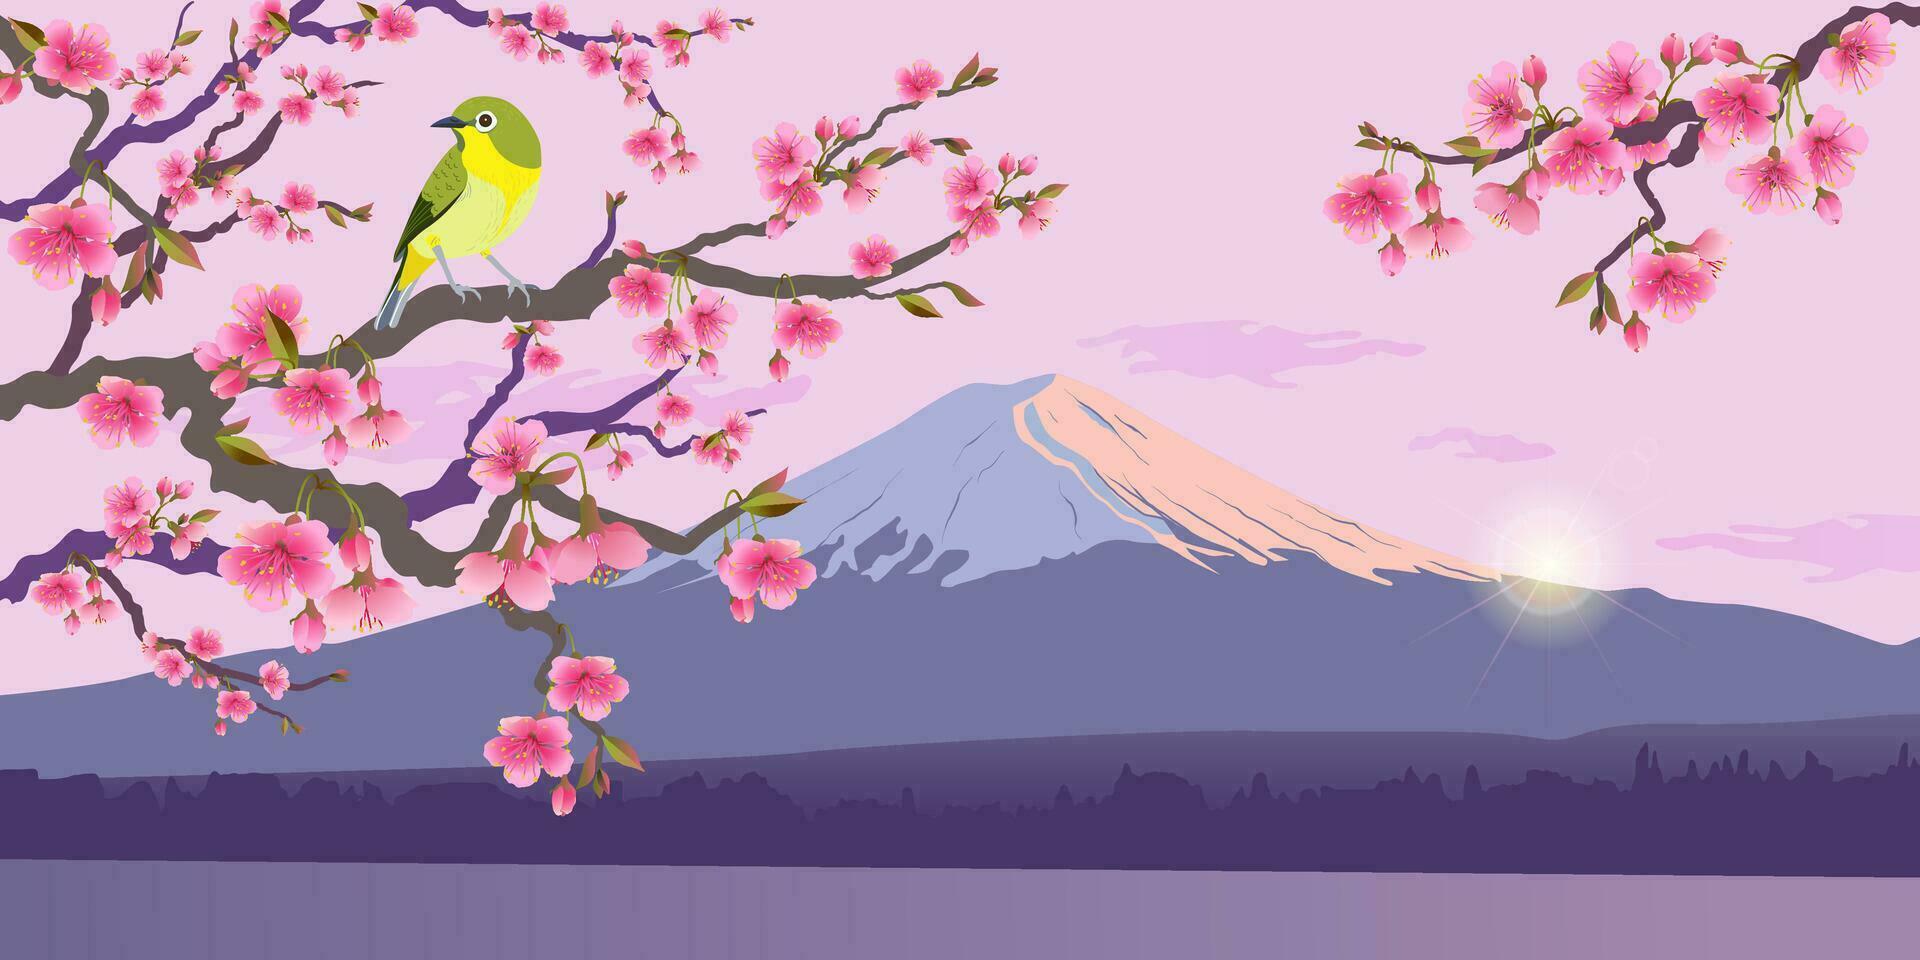 realista gráficos do rouxinol e sakura contra a pano de fundo do montar fuji. japonês rouxinol em uma ramo do uma florescendo cereja árvore. vetor